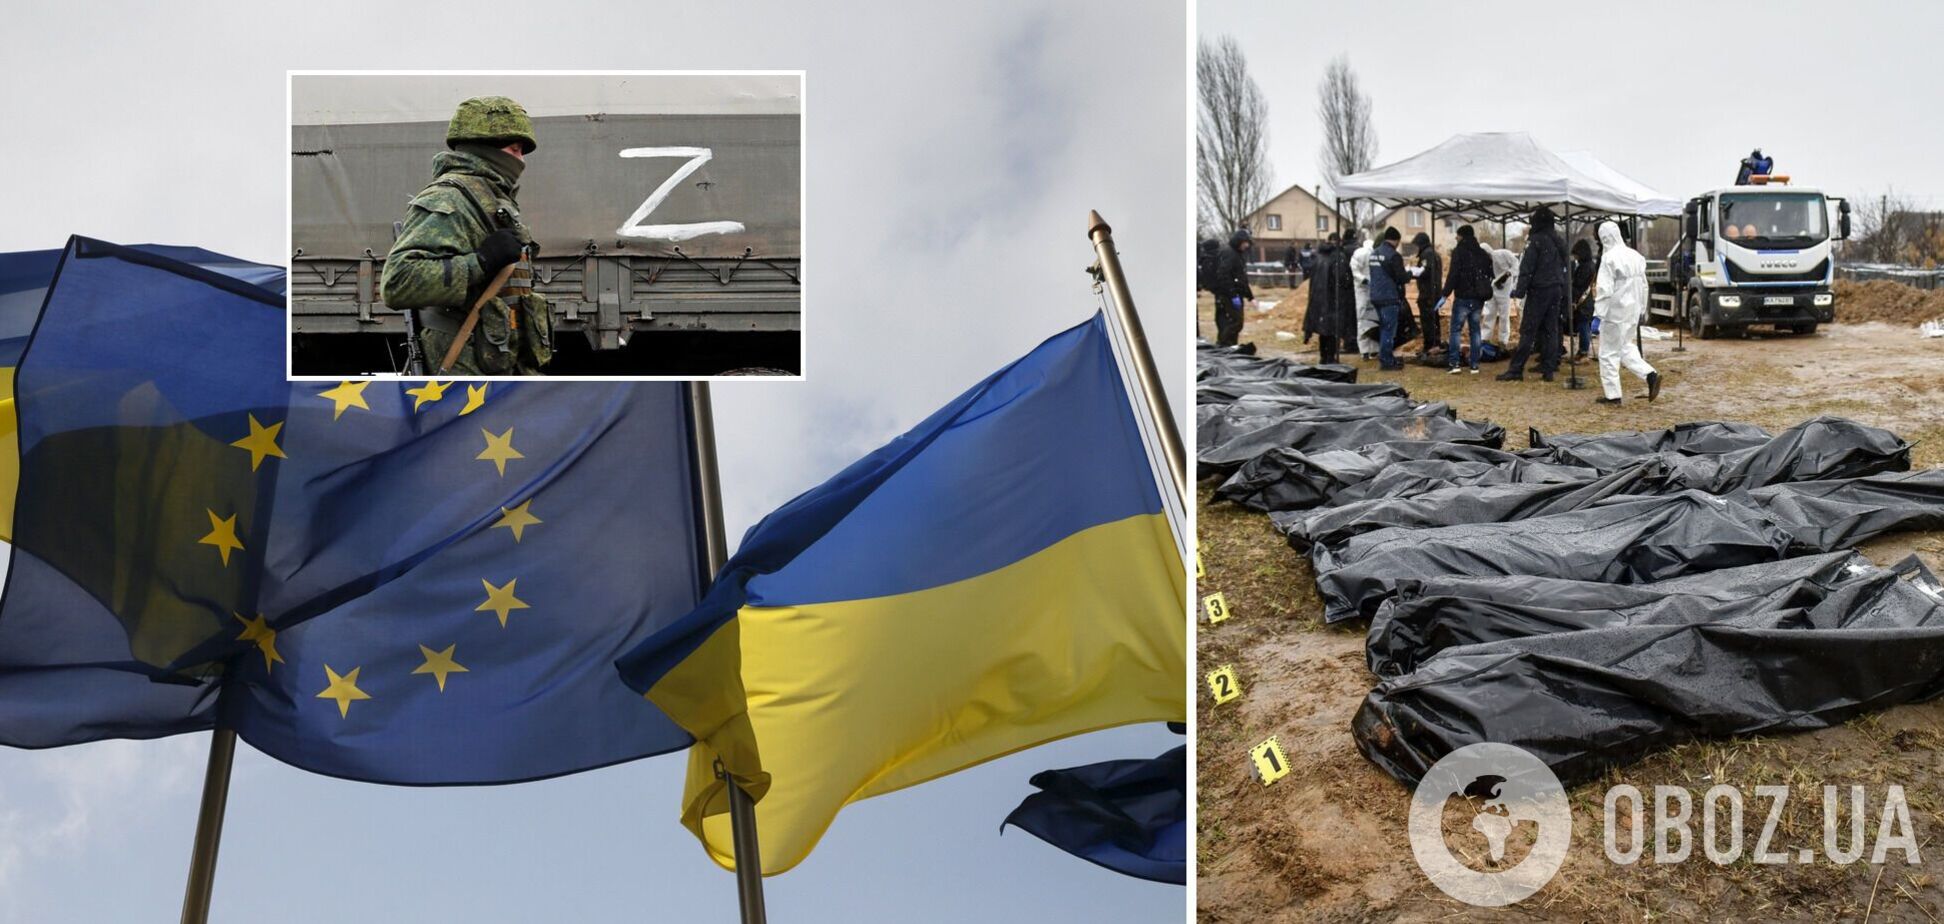 Євросоюз направить в Україну 54 радники для розслідування воєнних злочинів РФ